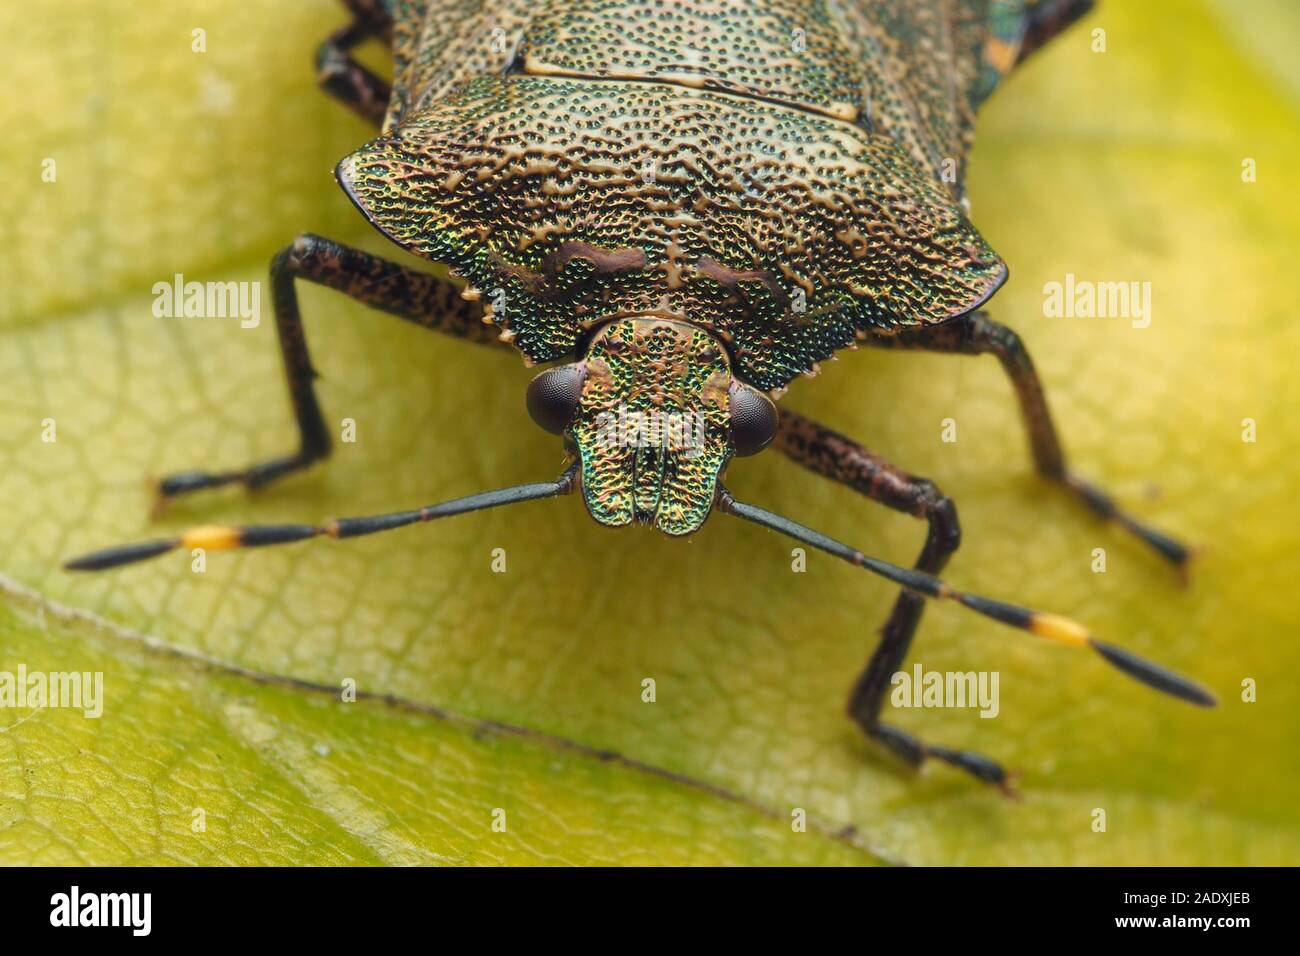 Nahaufnahme der frontalen Ansicht einer Bronze Shieldbug (Troilus luridus) ruht auf Beech Tree leaf. Tipperary, Irland Stockfoto